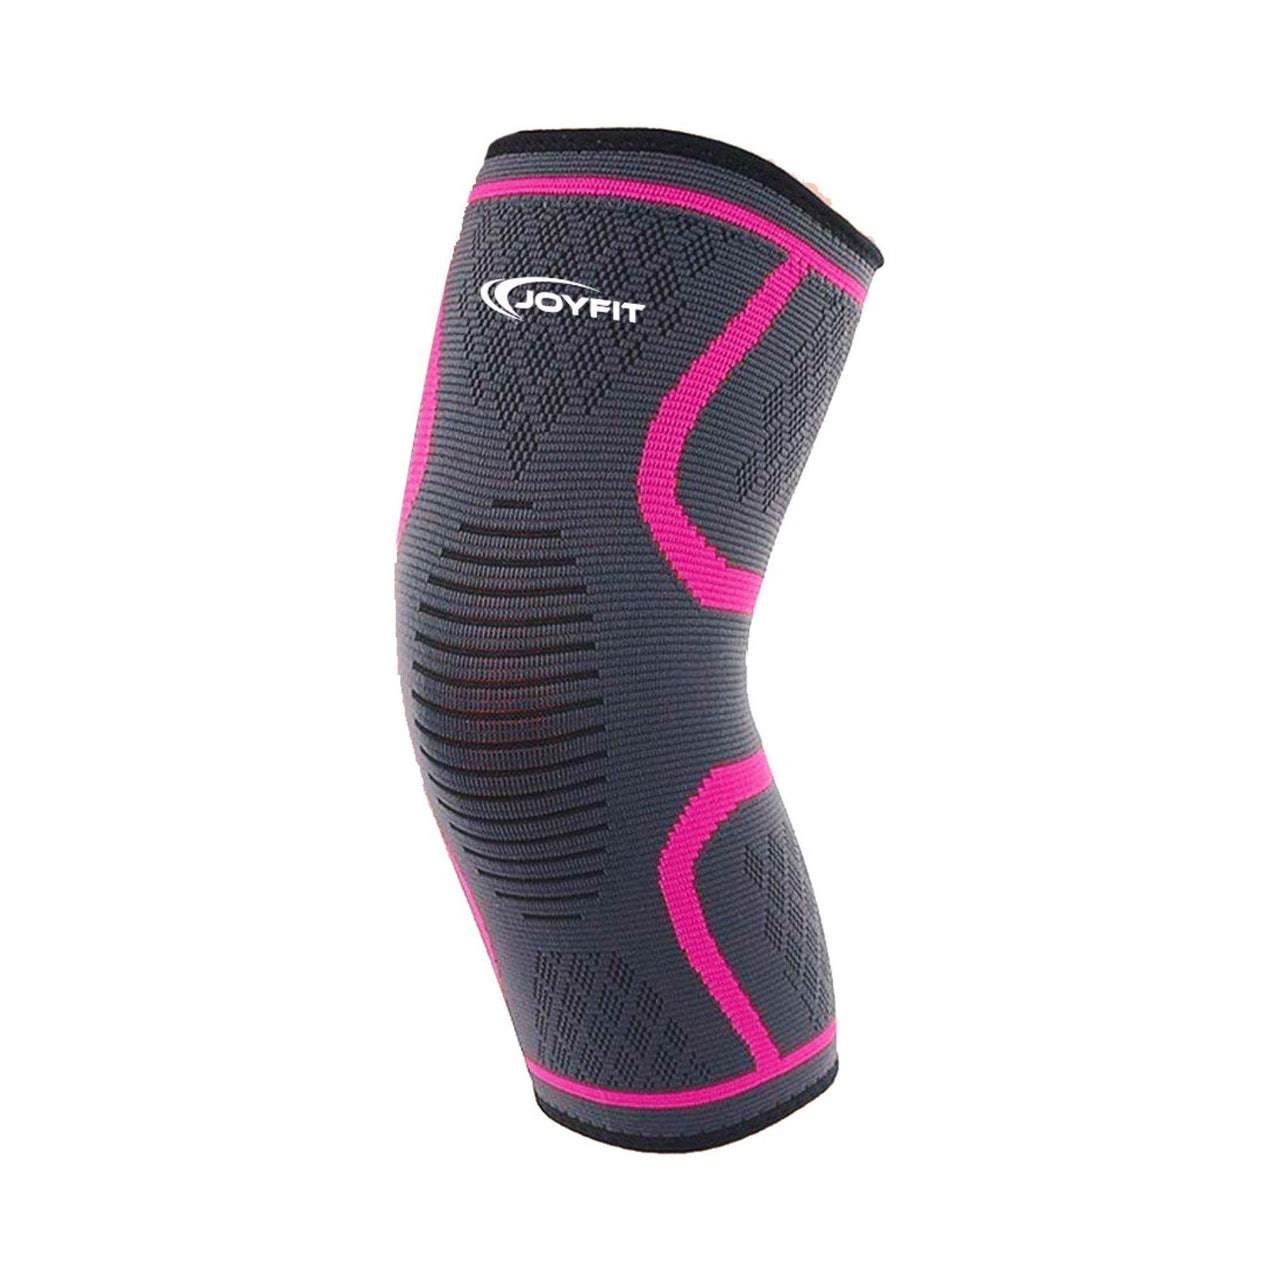 Knee Sleeves with Ventilated Patella (Pink) - Joyfit